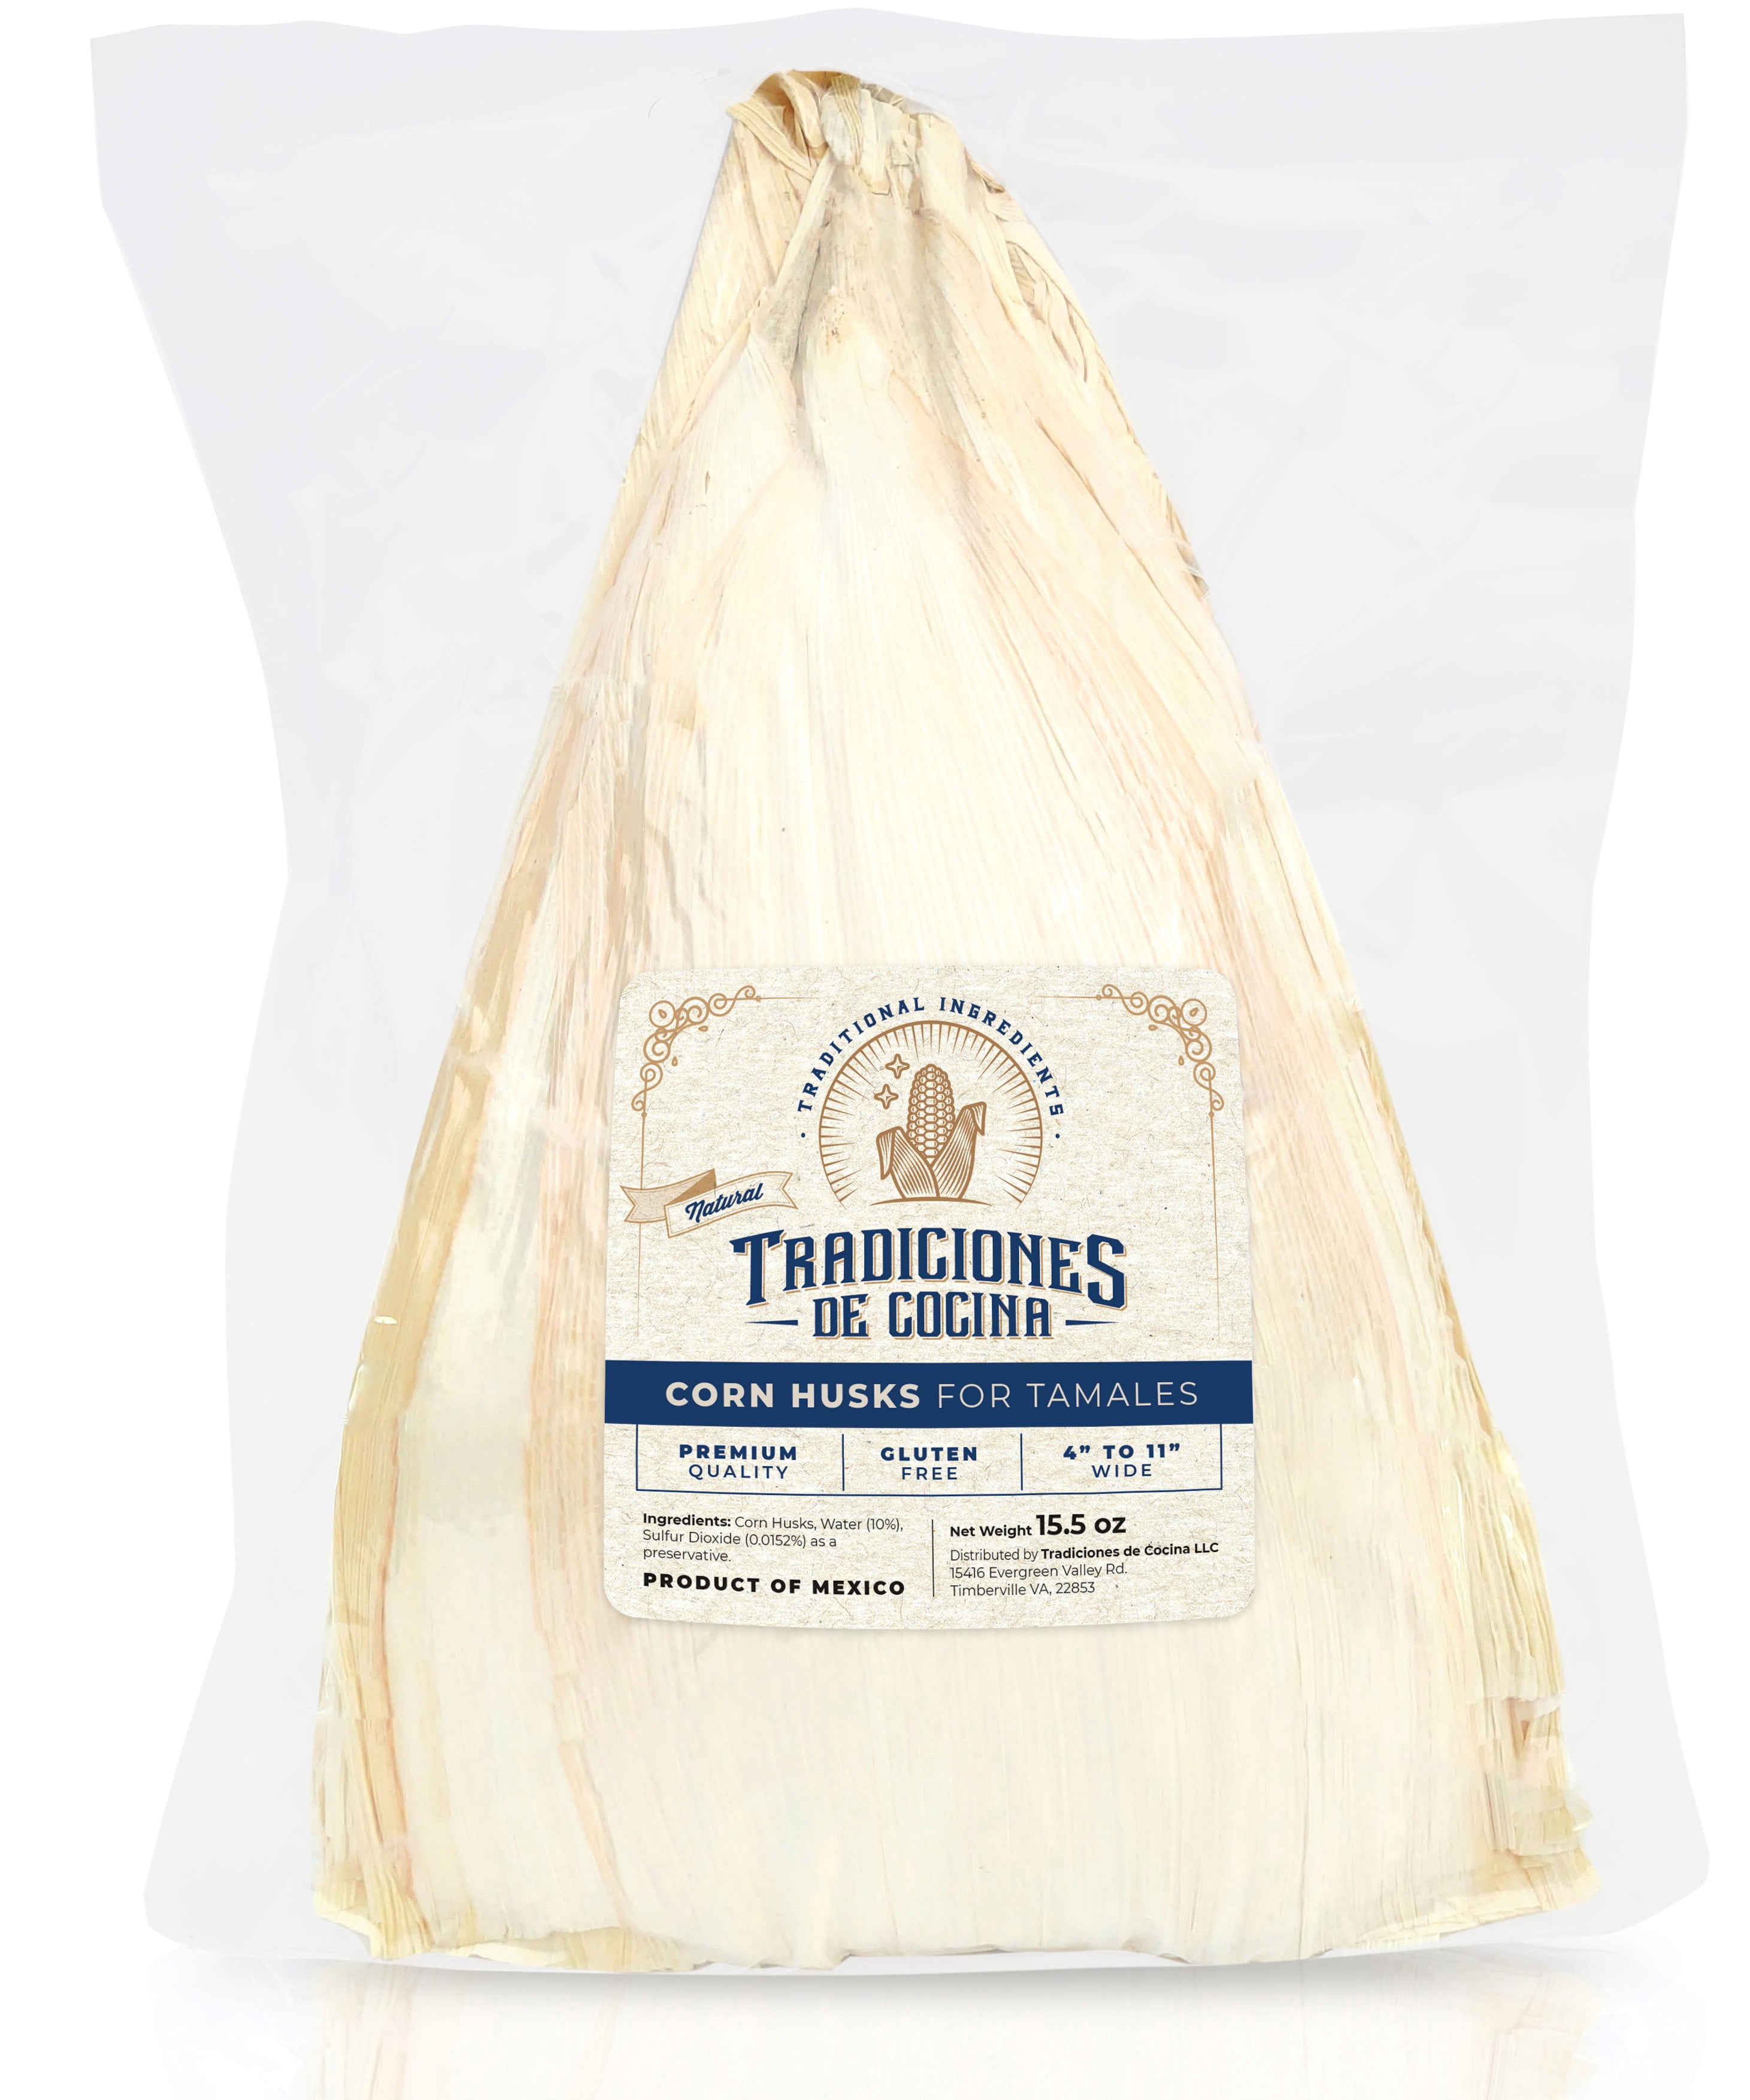 15.5oz - Premium Corn Husks for Tamales, 4-11 inches wide. Tradiciones de  Cocina; Traditional Ingredients (Hojas de Maiz para Tamales.)